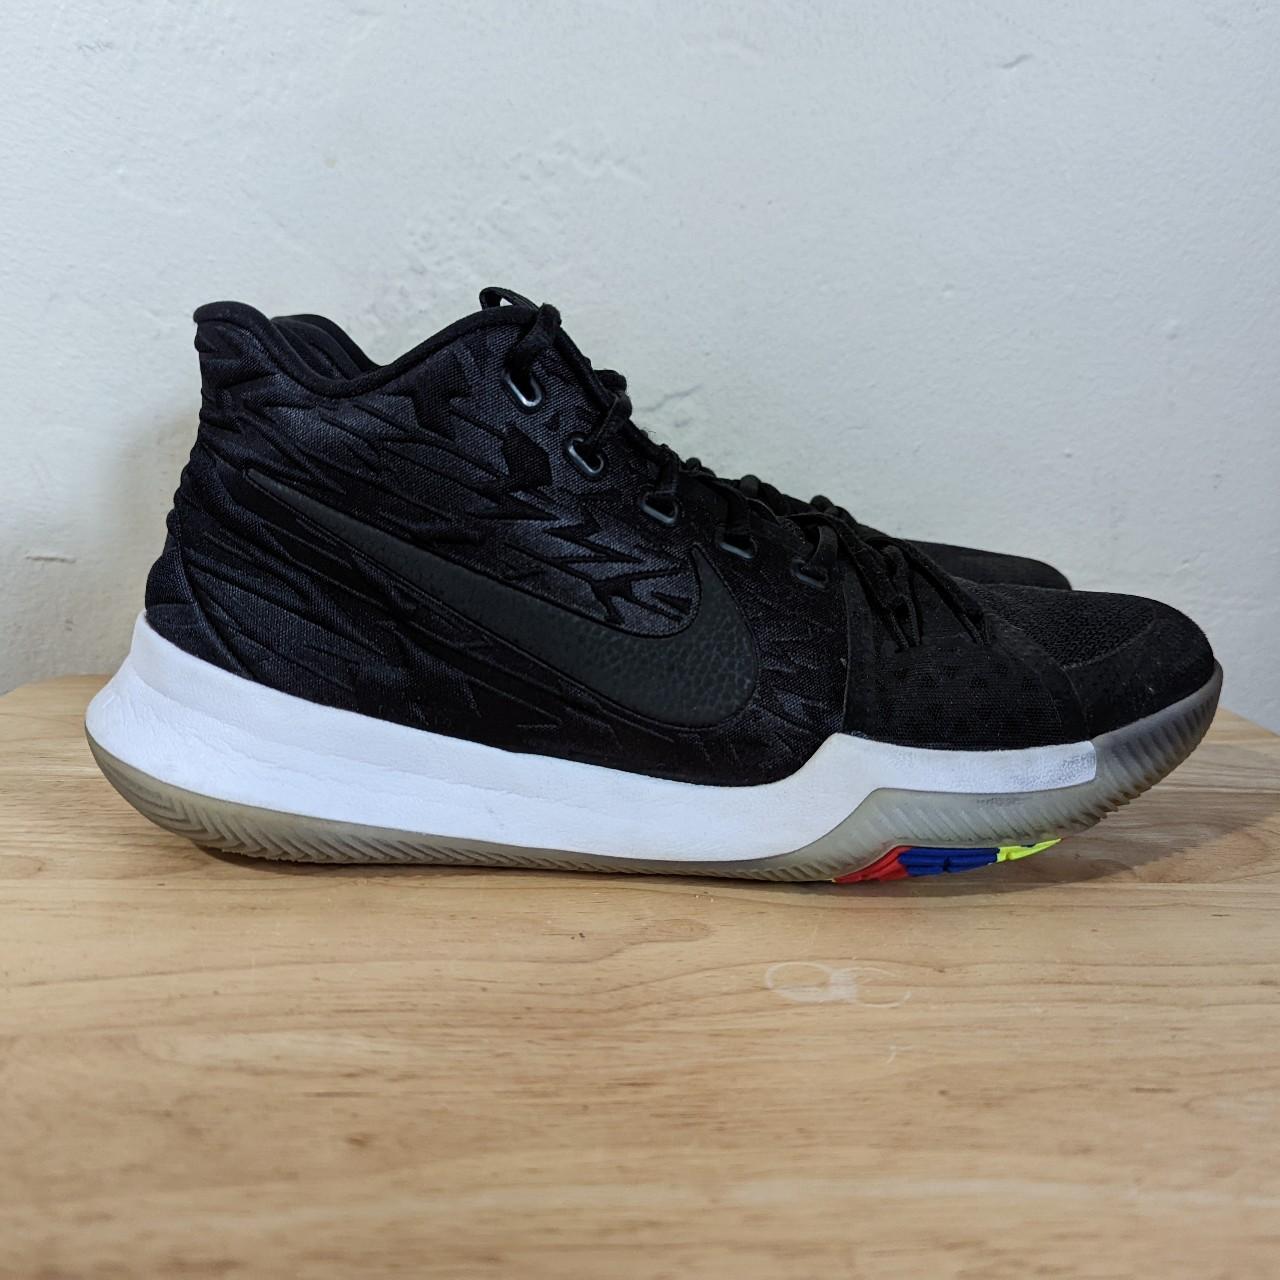 Nike Kyrie 3 Black Multi Color Sneakers 852395-009... - Depop